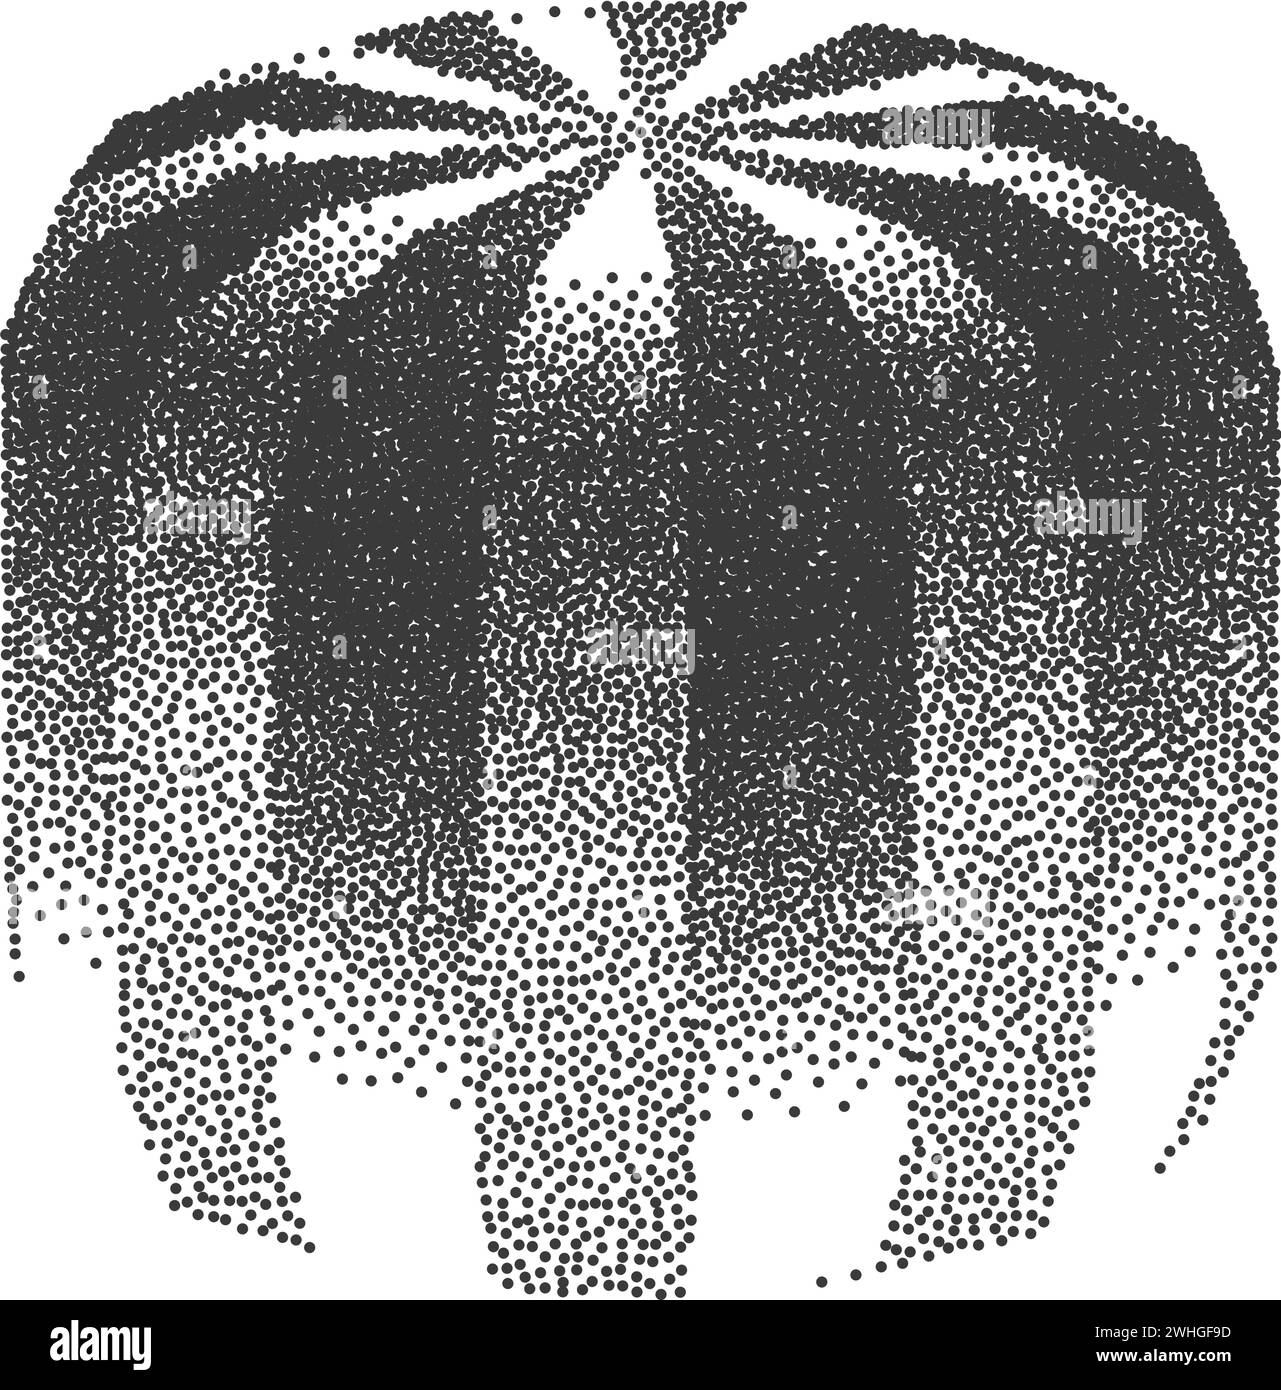 Illustration der gestochenen Melone in Schwarz-weiß-Vektor Stock Vektor